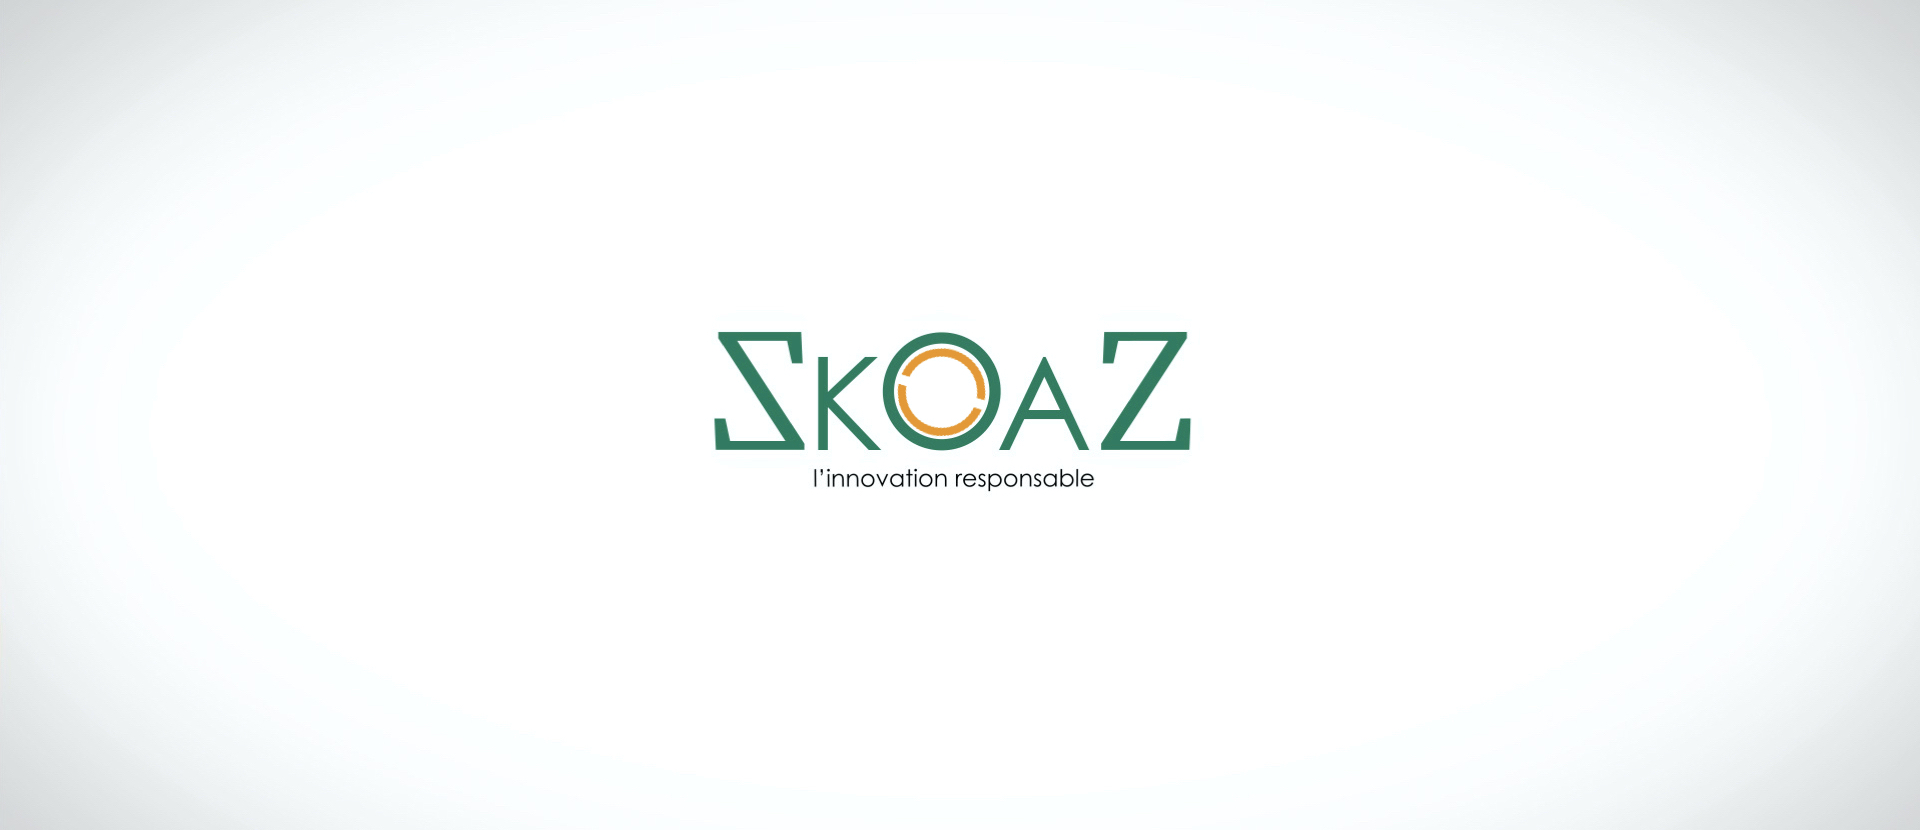 Skoaz - l'innovation responsable